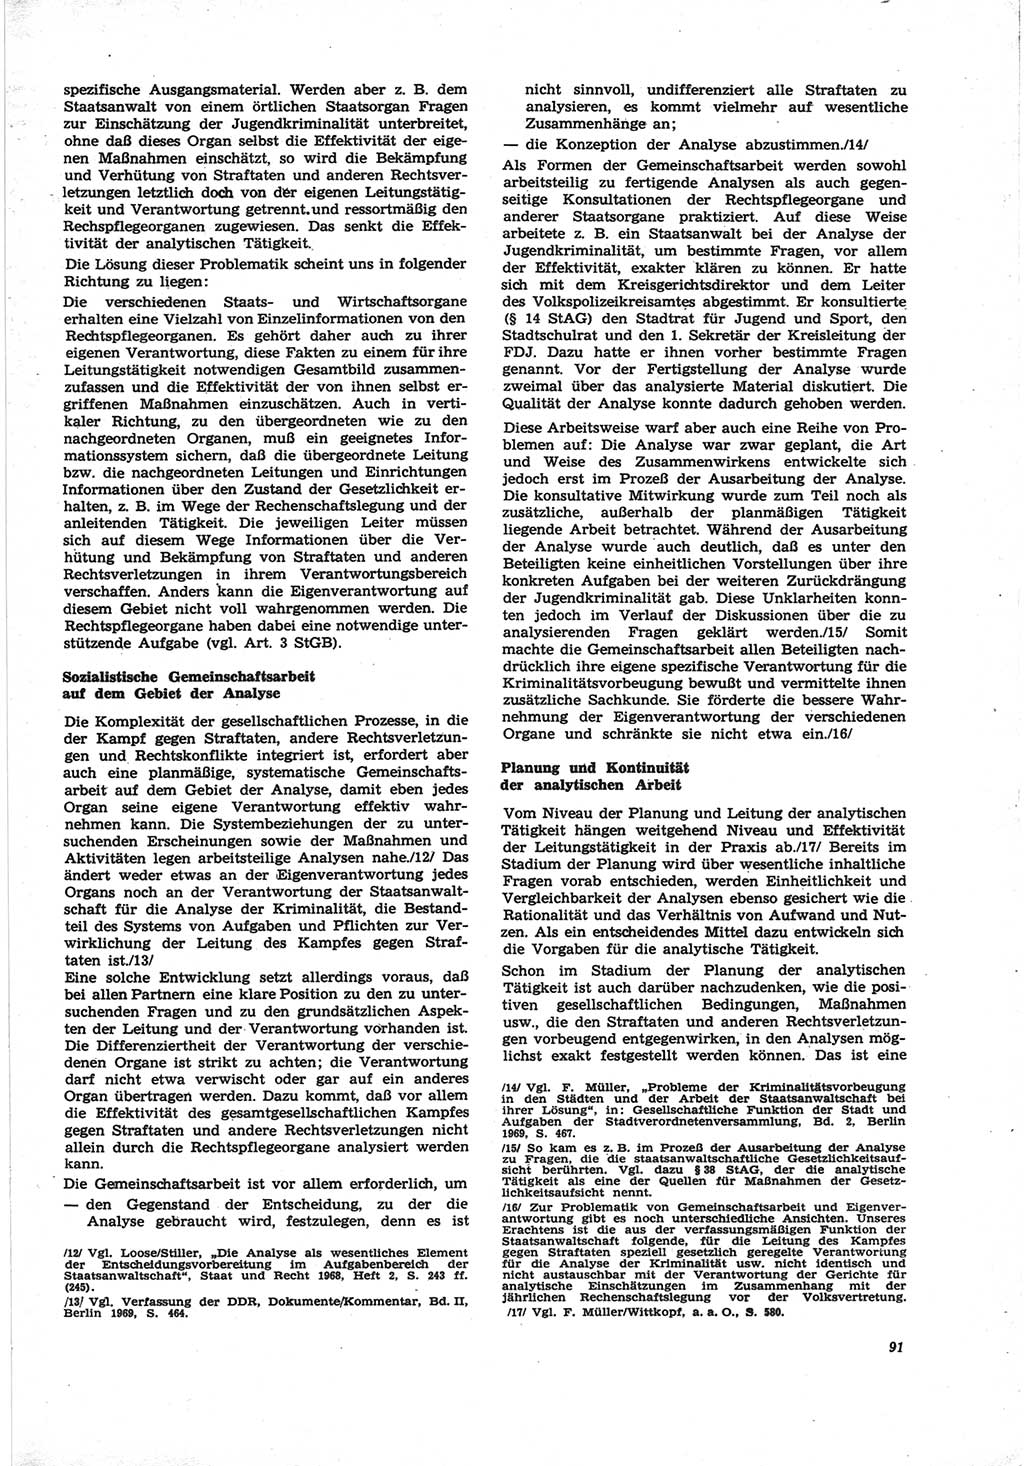 Neue Justiz (NJ), Zeitschrift für Recht und Rechtswissenschaft [Deutsche Demokratische Republik (DDR)], 25. Jahrgang 1971, Seite 91 (NJ DDR 1971, S. 91)